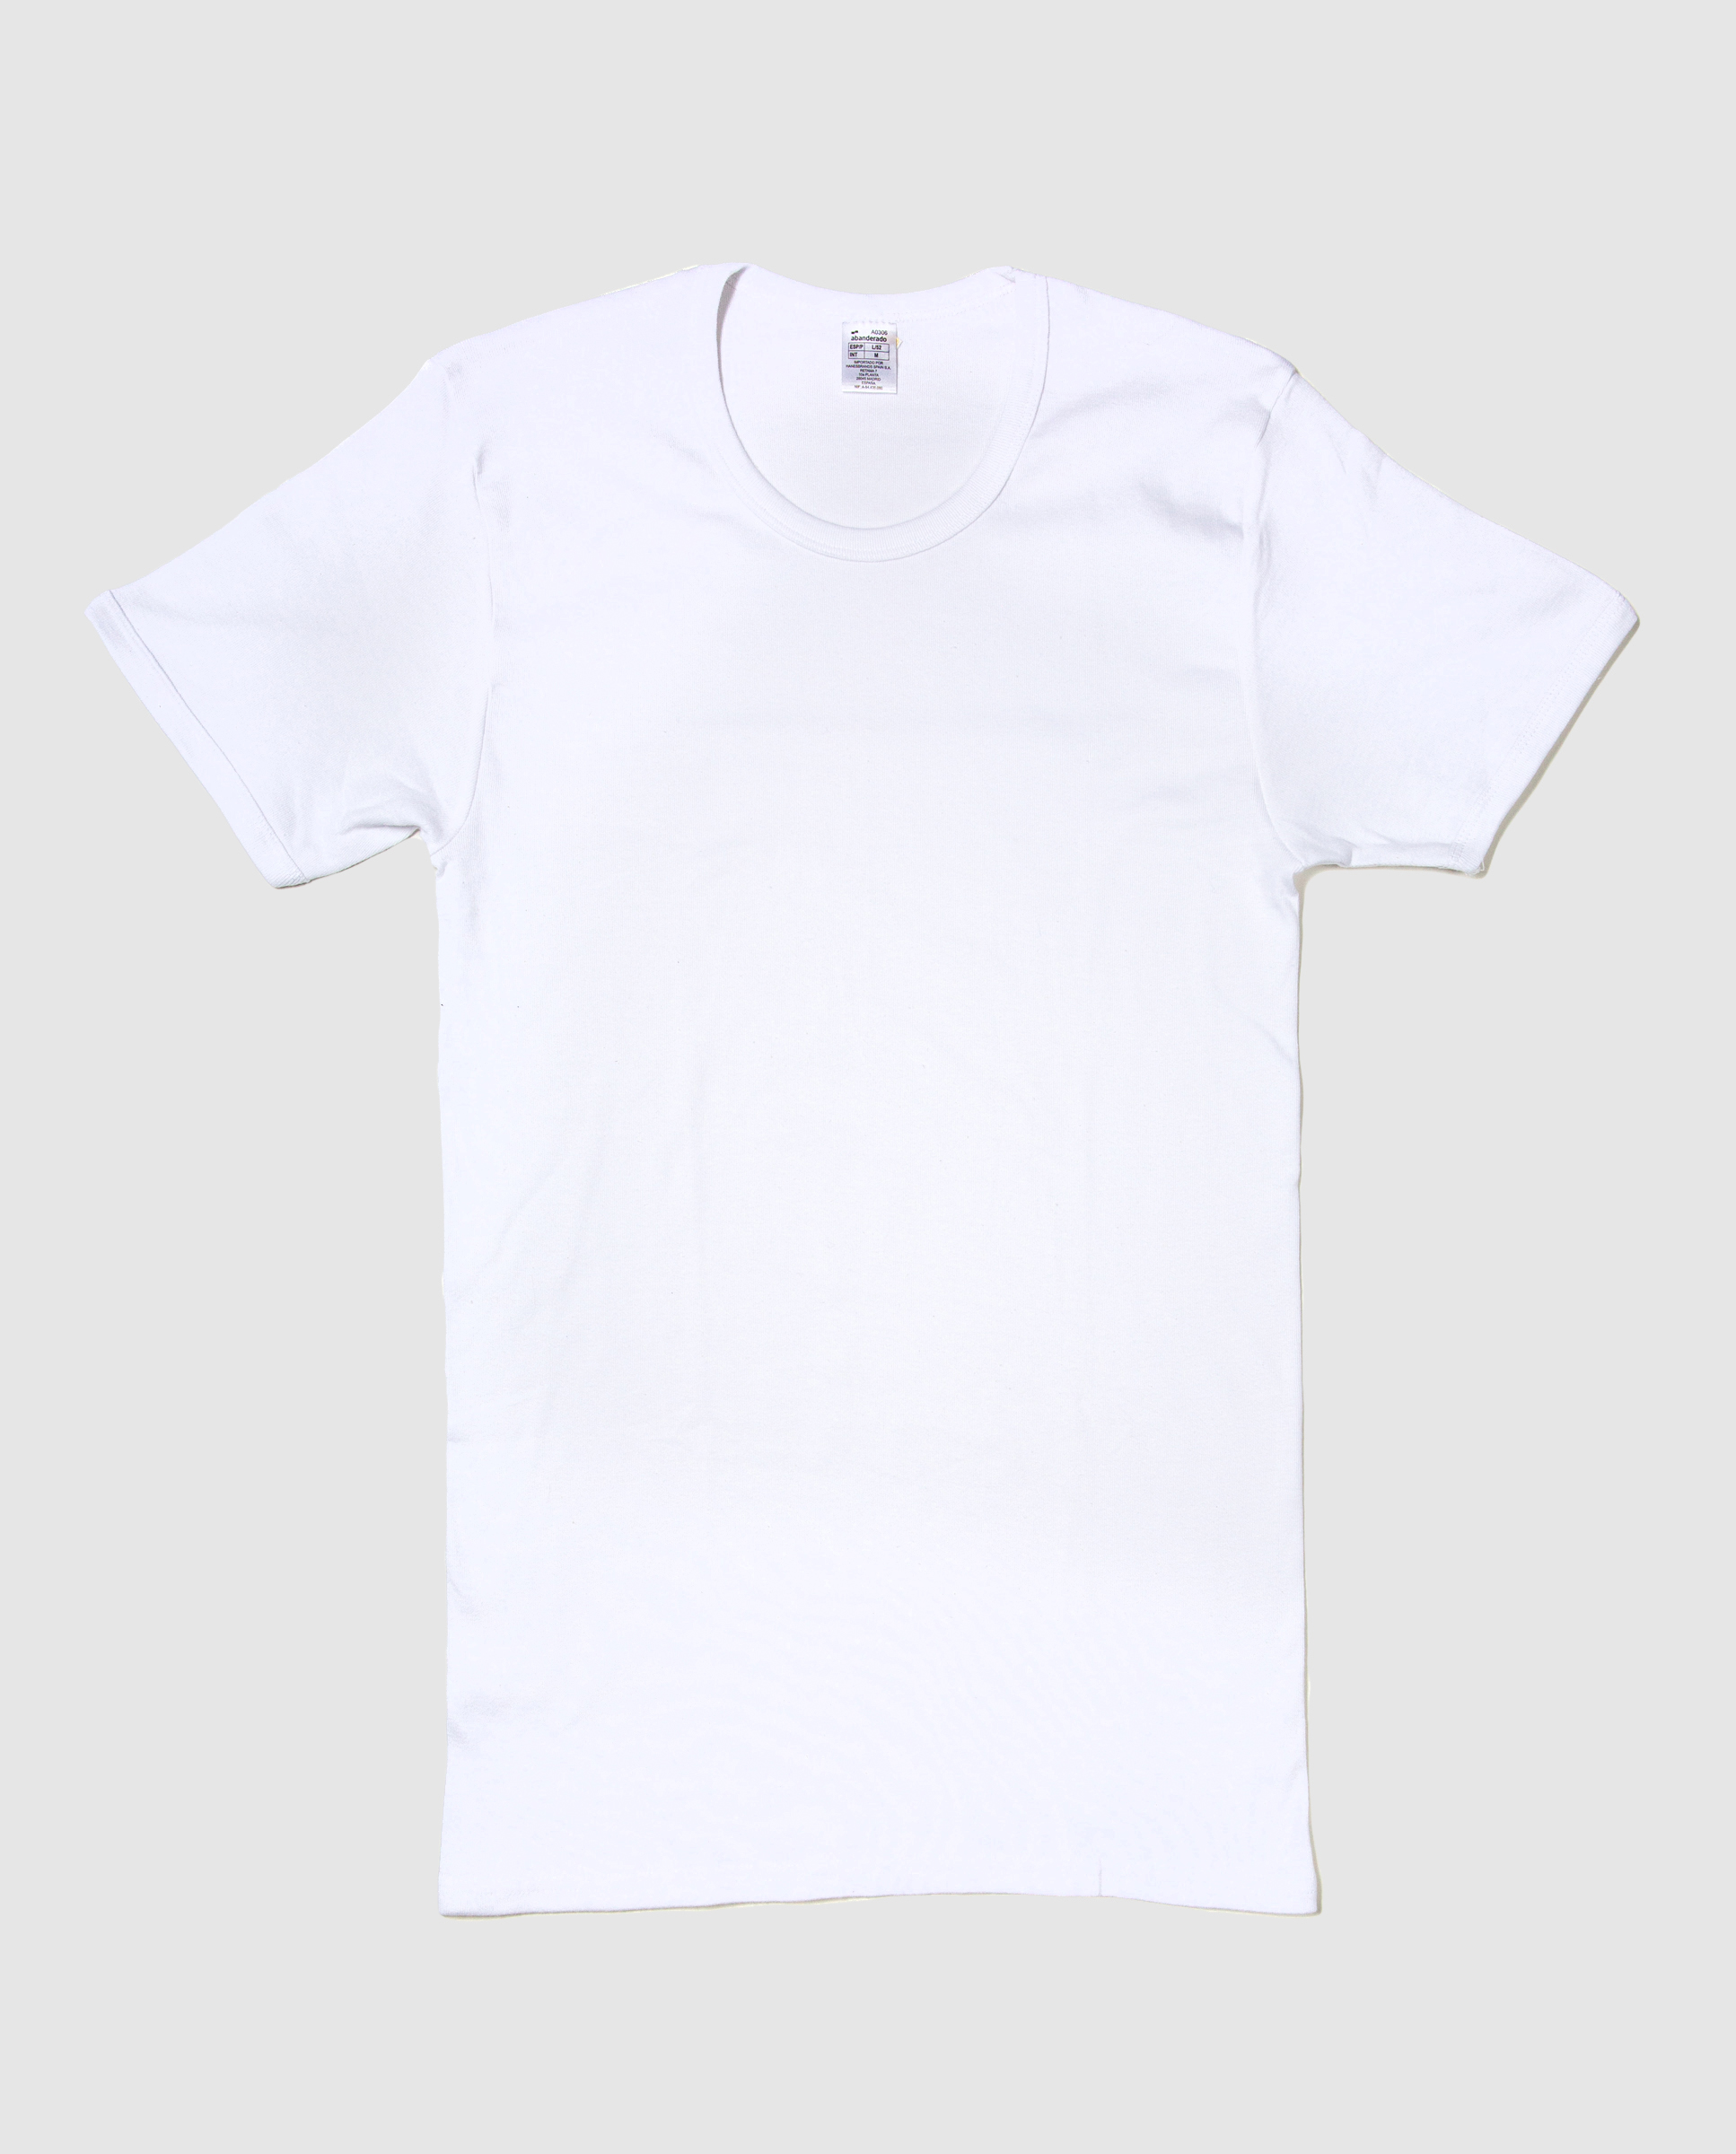 ▷ Chollo Camiseta interior Abanderado de manga corta para hombre por sólo  7,99€ (20% de descuento)